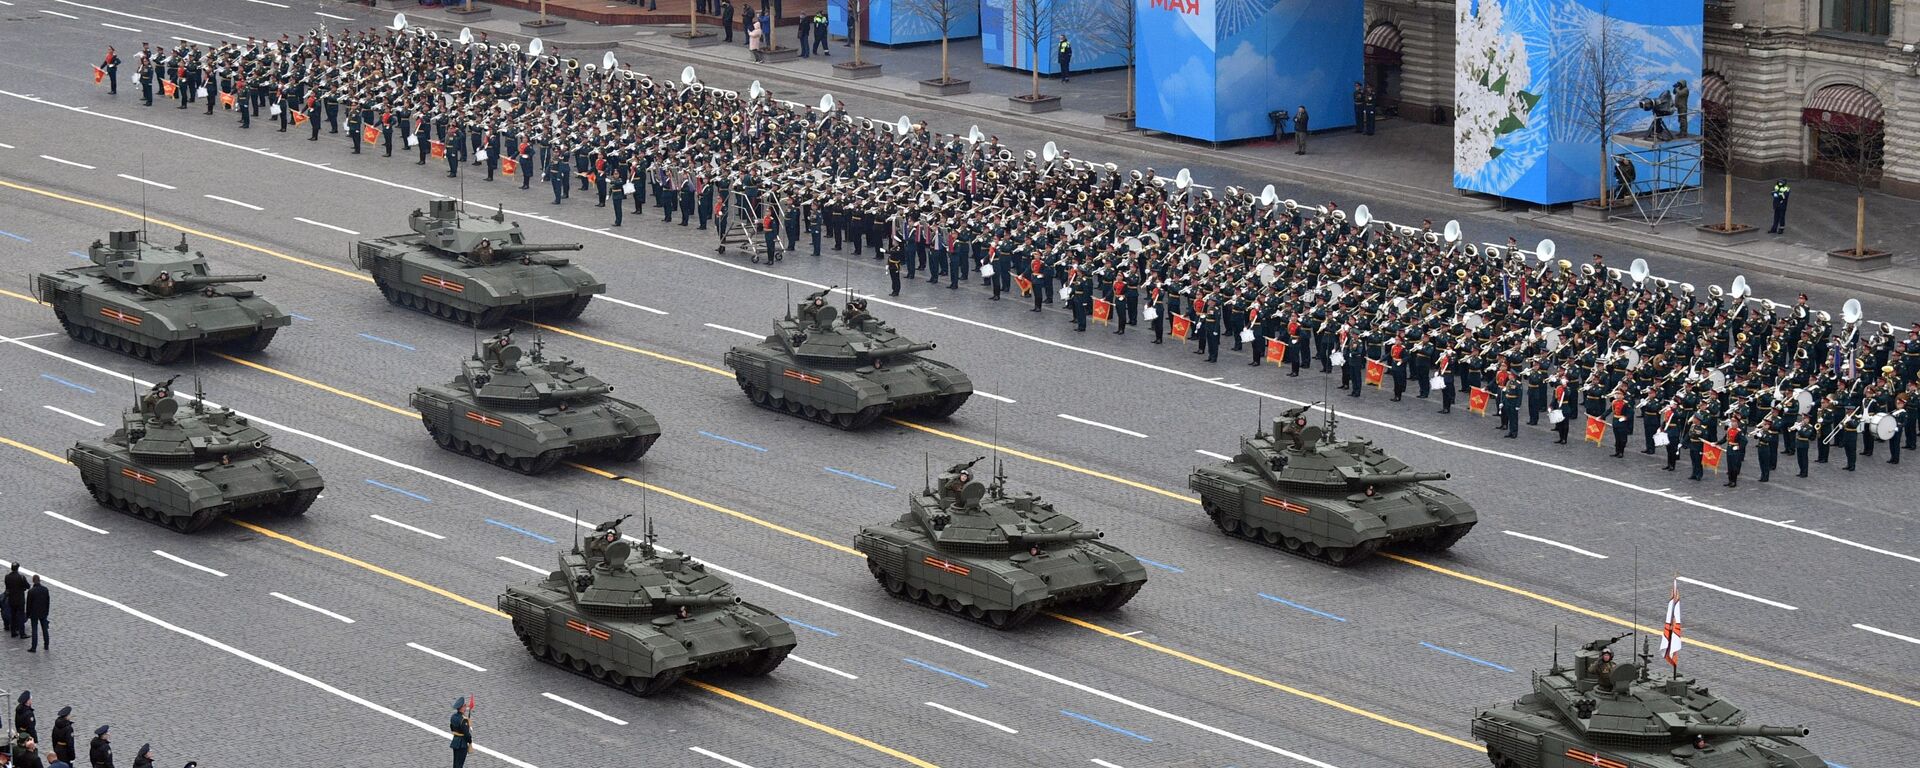 Тенкови Т-90М и Т-14 Армата на војној паради поводом обележавања 76. годишњице победе у Великом отаџбинском рату - Sputnik Србија, 1920, 23.05.2021